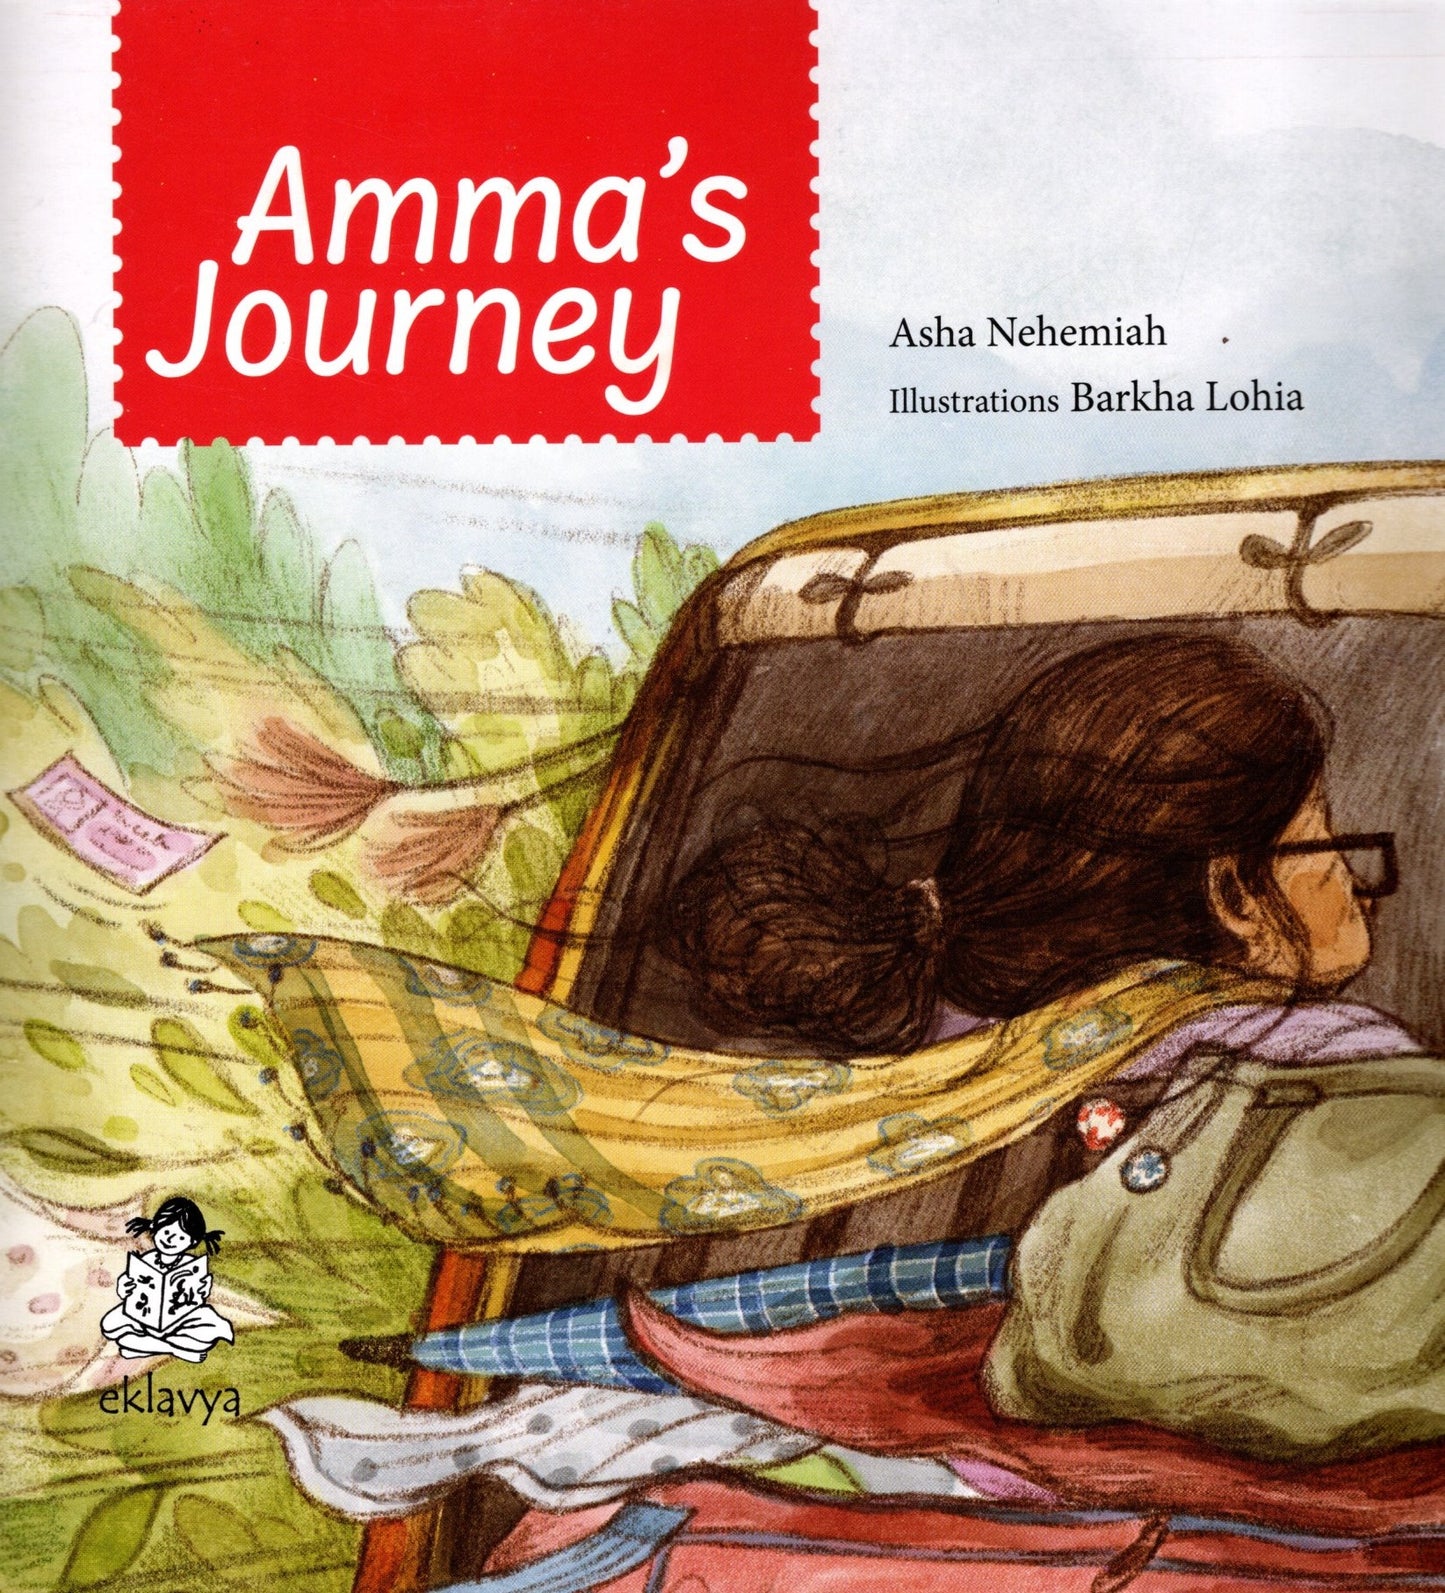 Amma's Journey